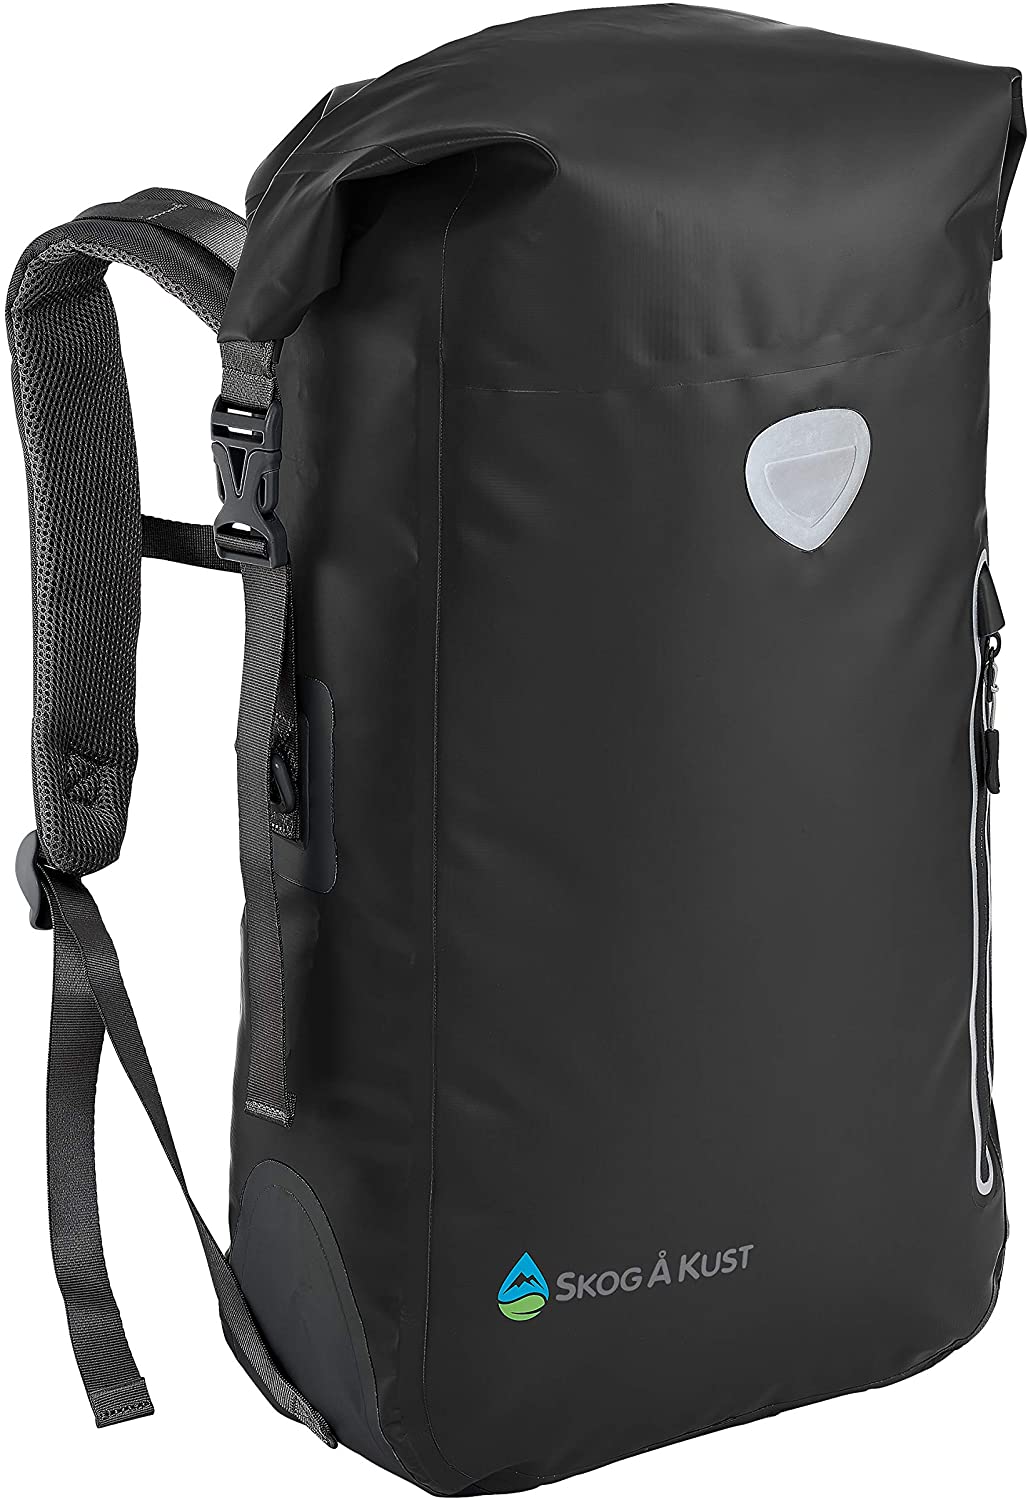 Skog Å Kust BackSåk Floating Waterproof Exterior Zippered Pocket Roll Top Backpack